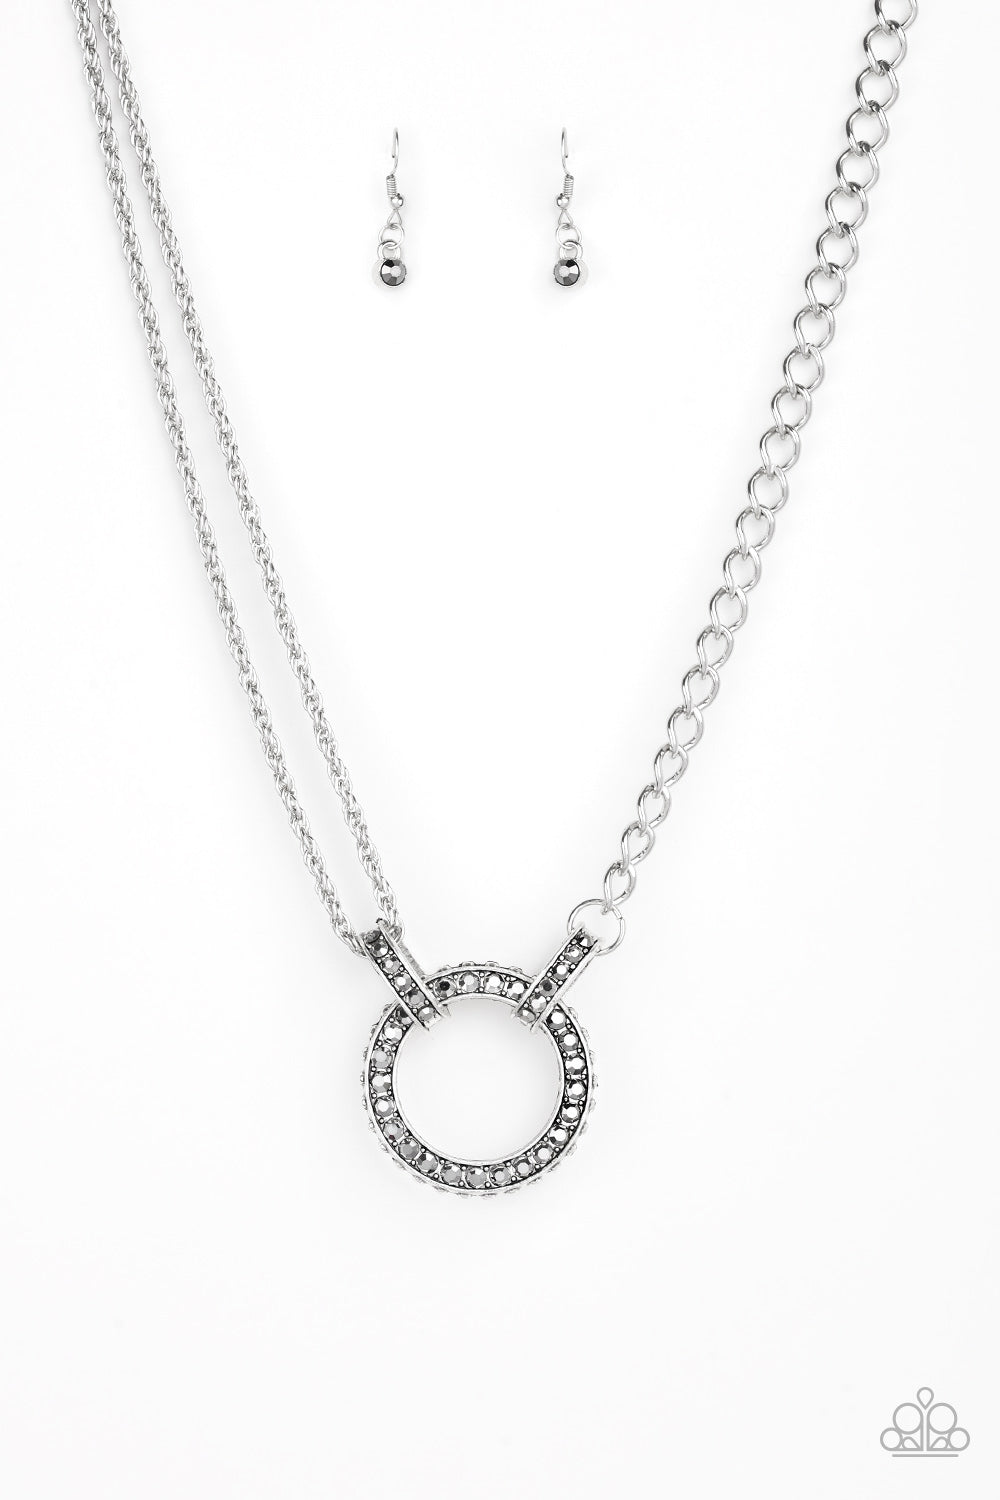 Paparazzi Accessories Razzle Dazzle - Silver Necklace - Be Adored Jewelry